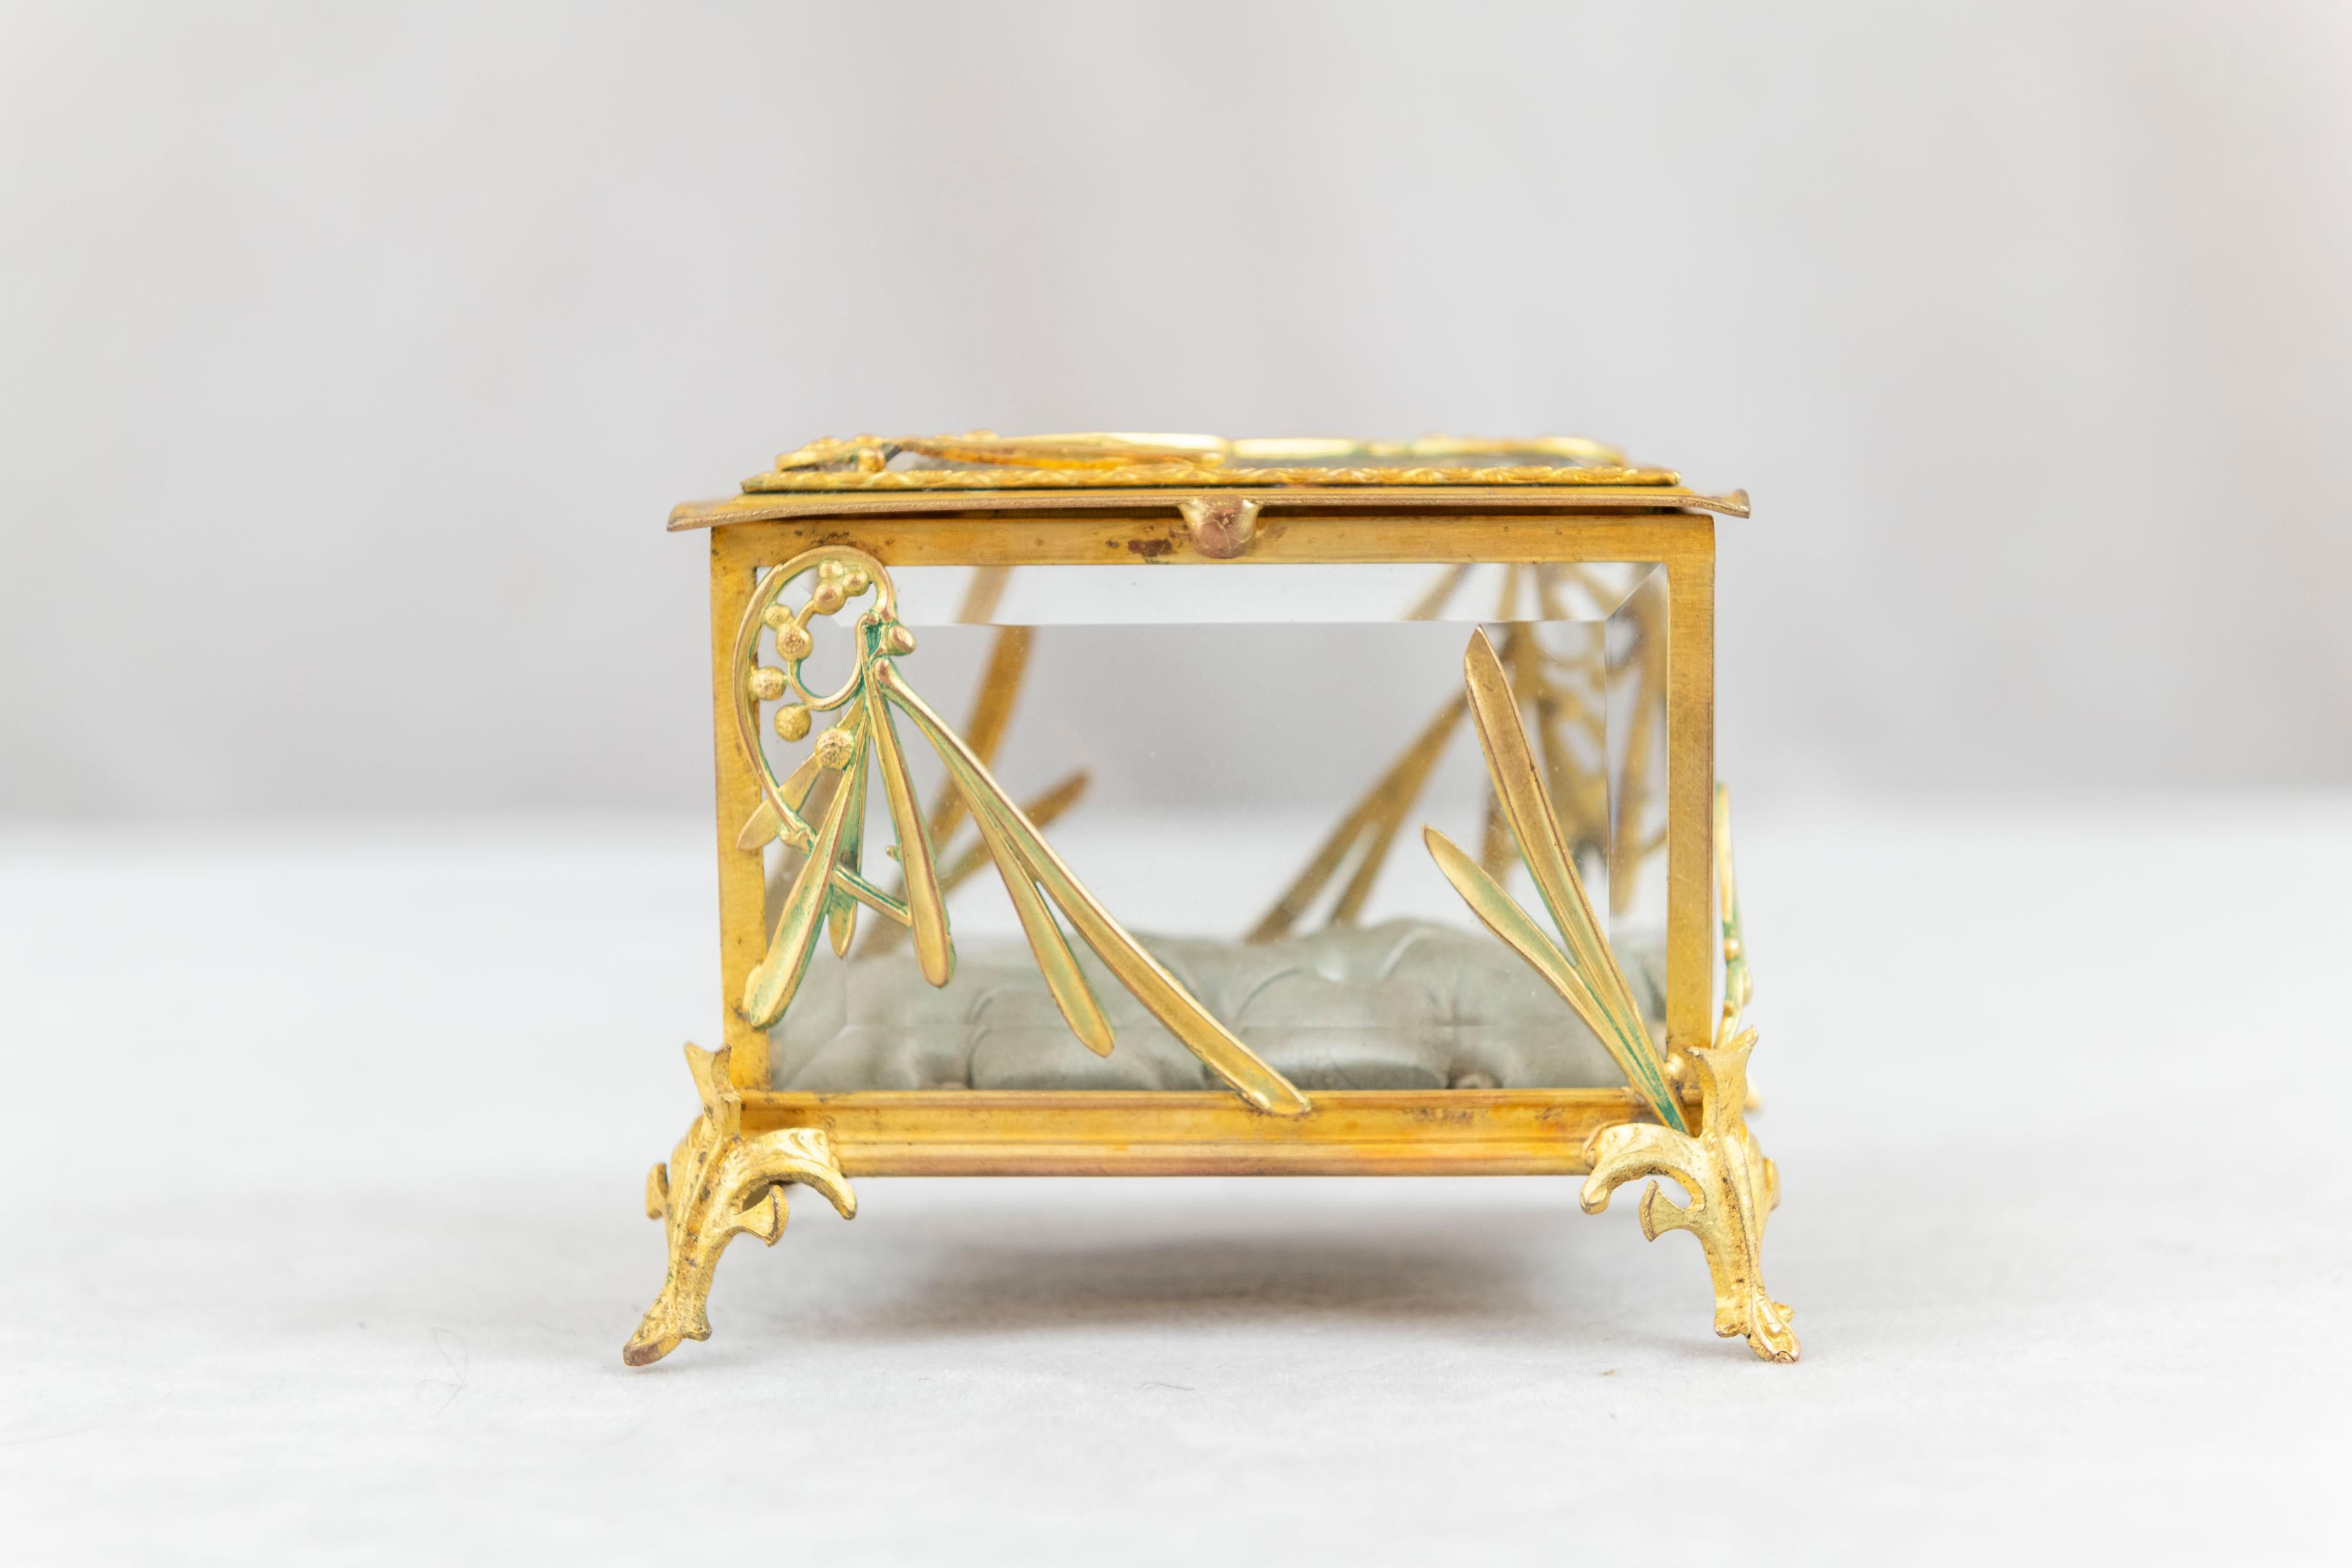  Eine sehr hochwertige Jugendstil-Ringdose aus vergoldeter Bronze. Das gesamte Glas ist abgeschrägt und die Innenseite ist aus getufteter Seide. Ein auffälliges und seltenes kleines Stück. Ein perfektes Geschenk für den Verlobungsring, aber auch für